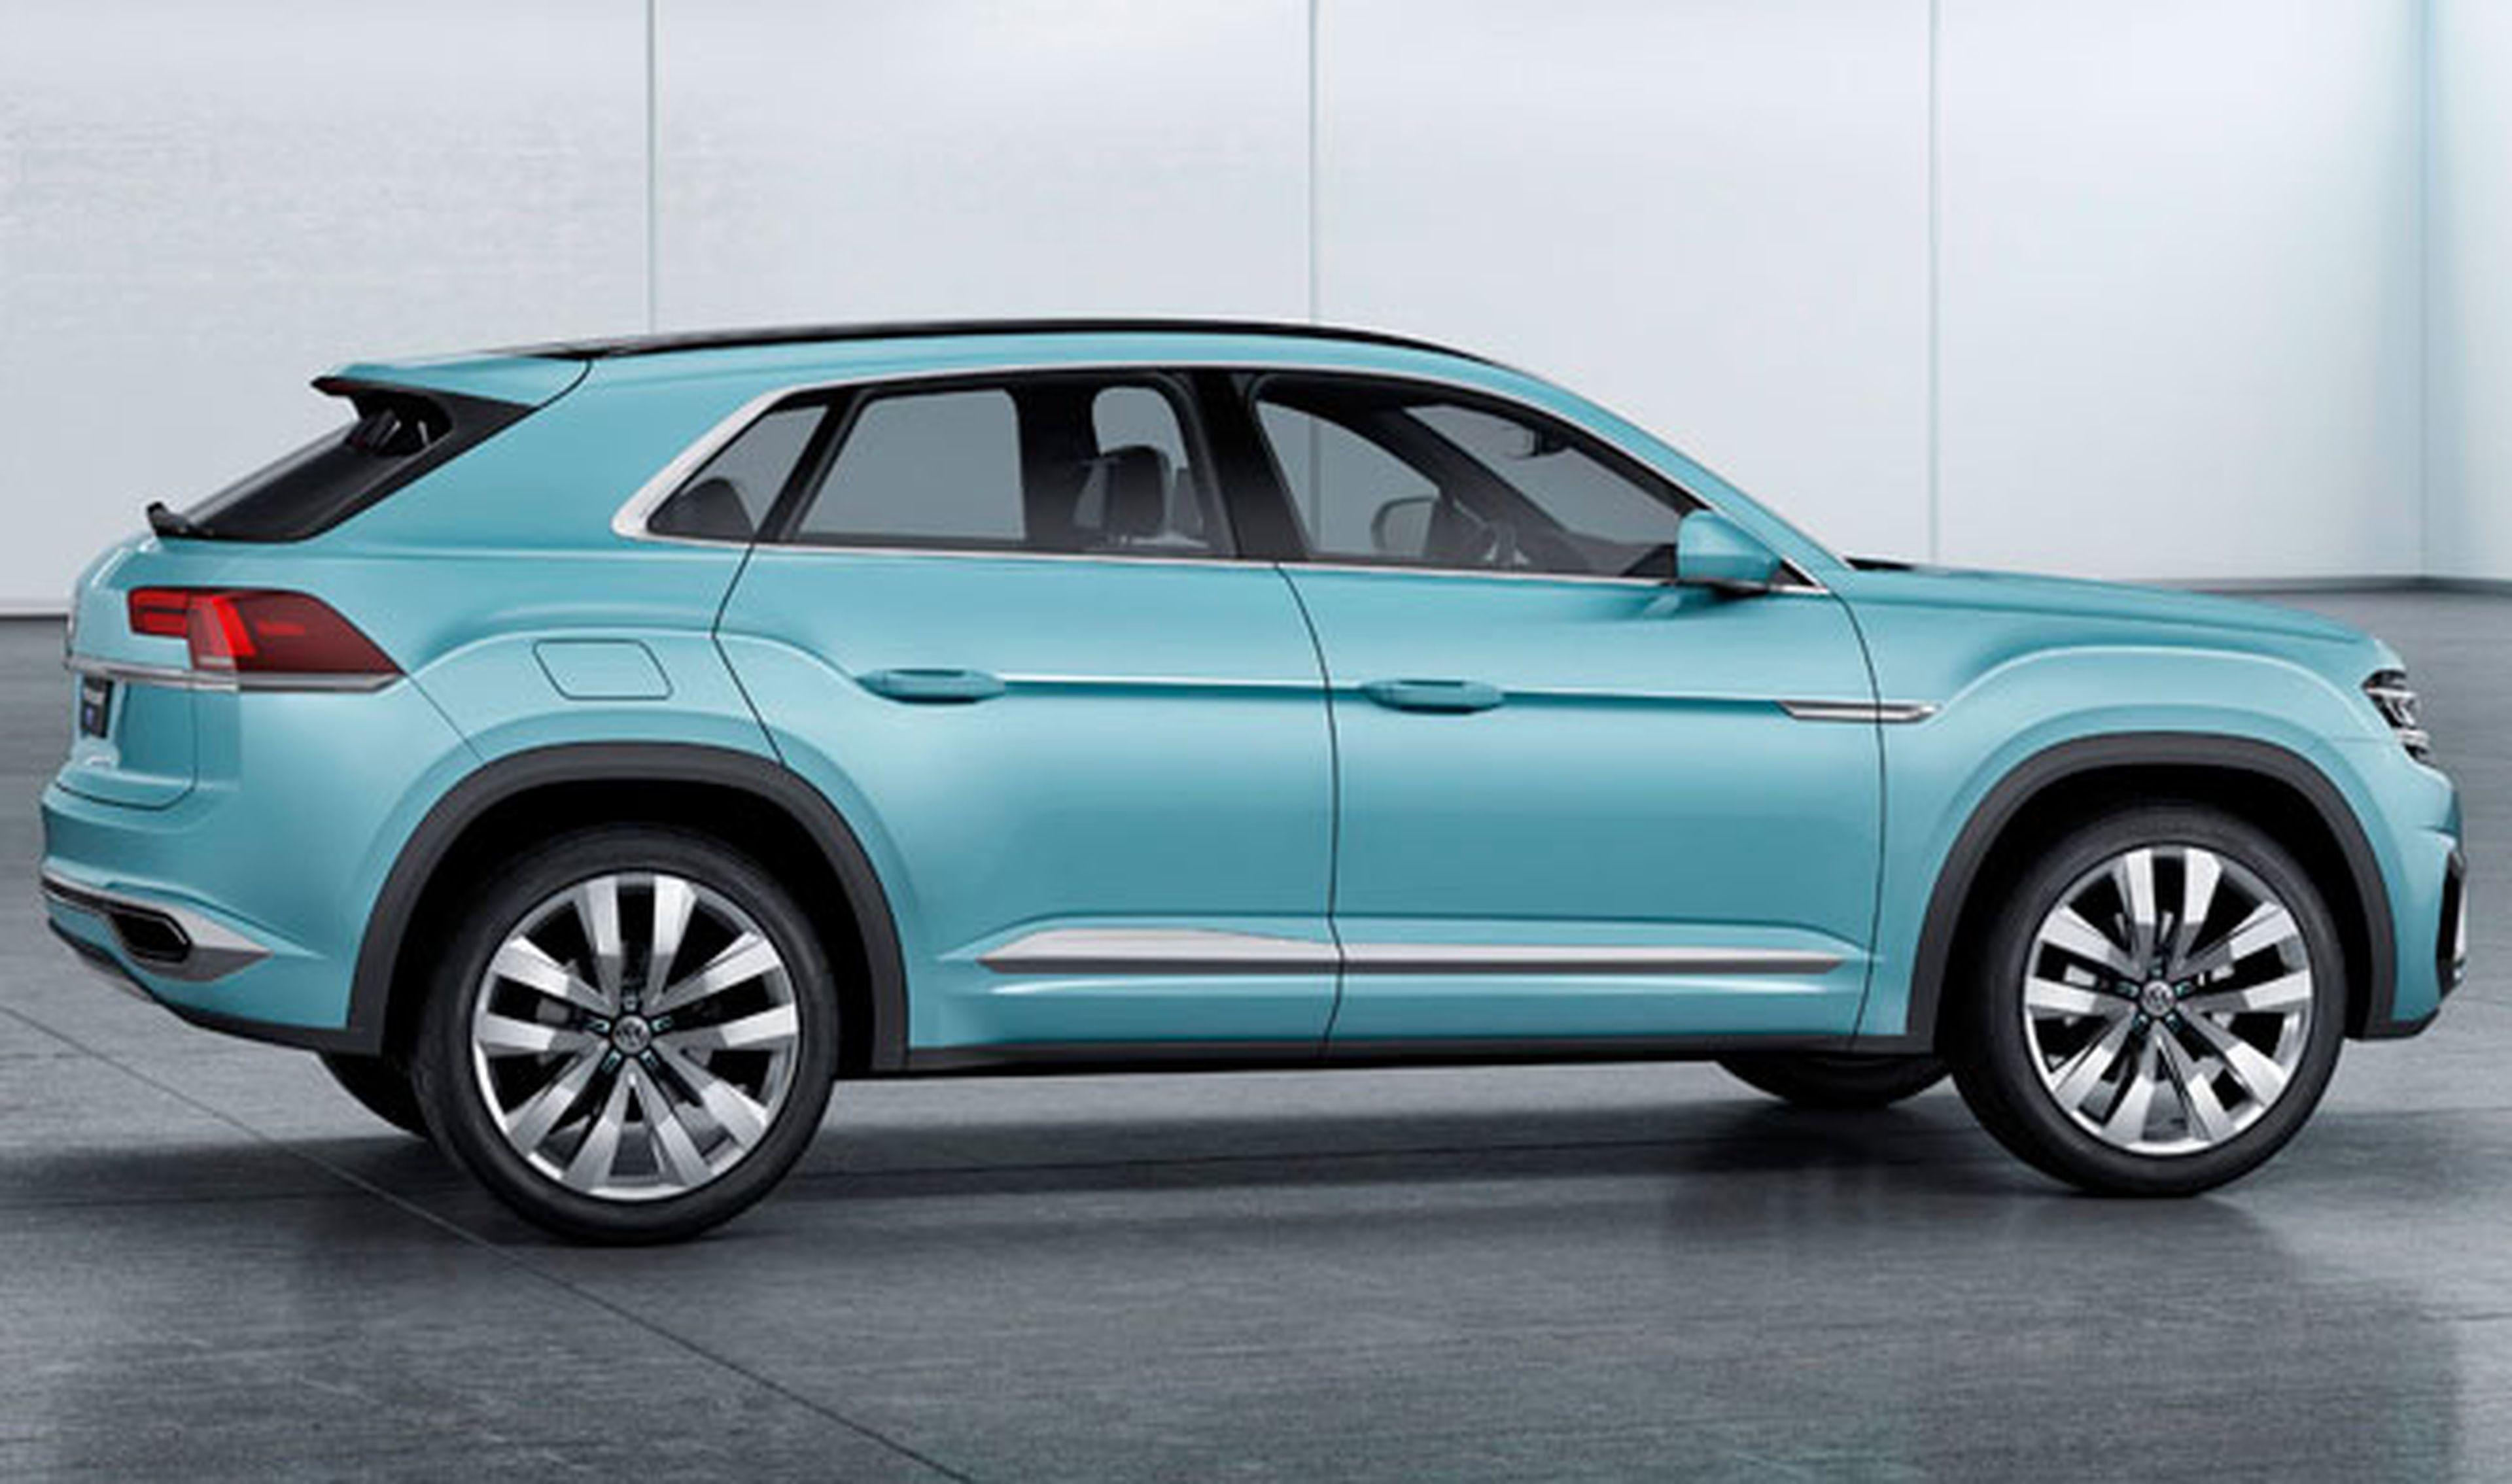 Volkswagen planea un Tiguan Coupé R